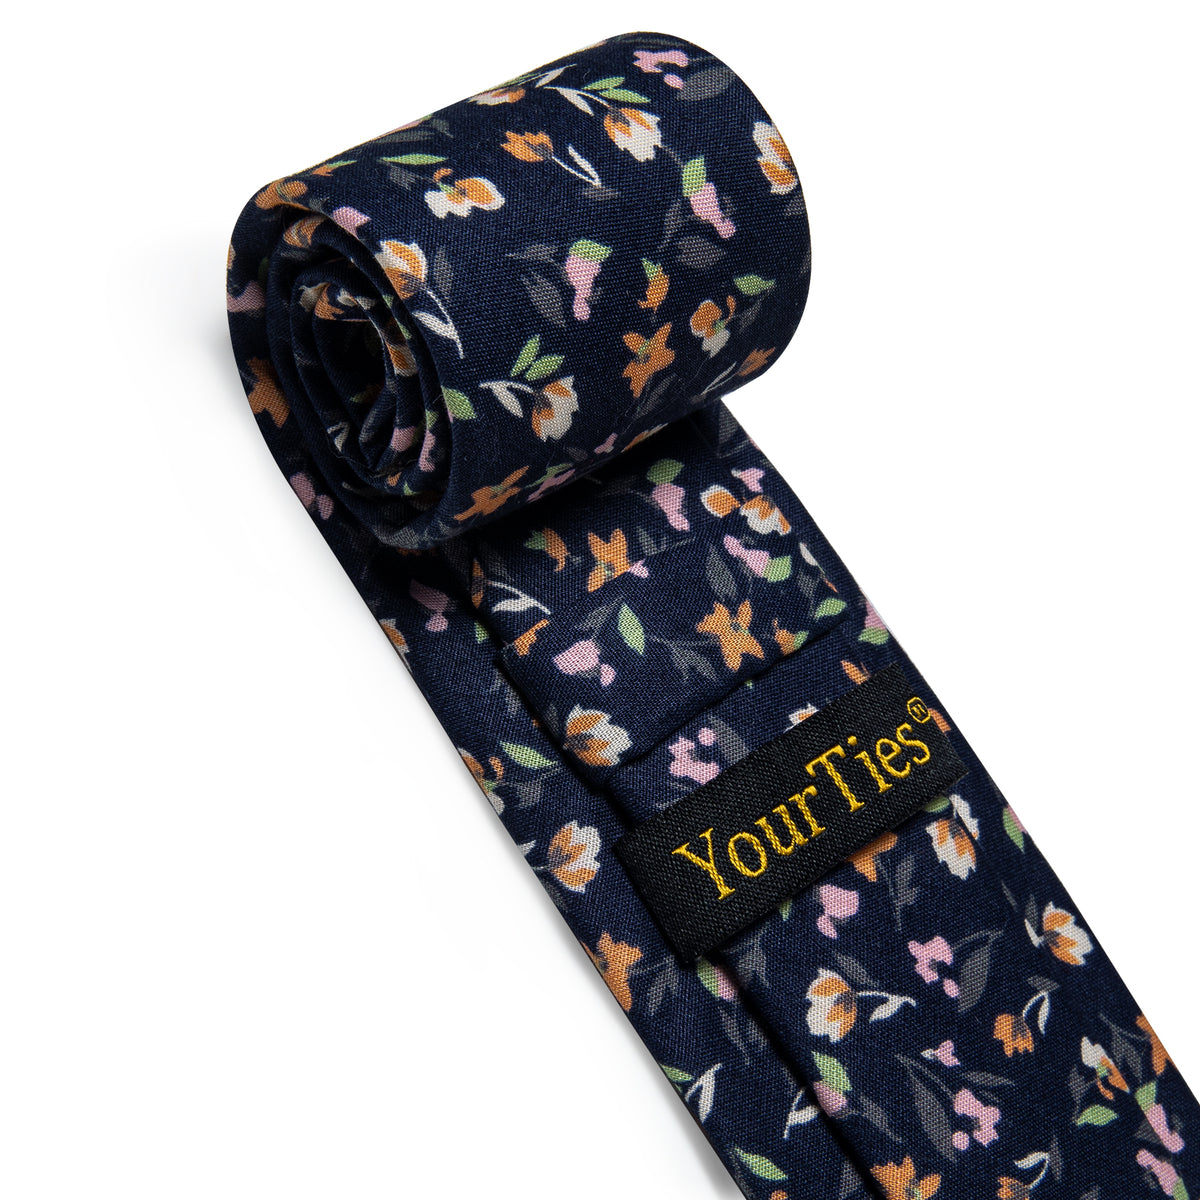 Dark Blue Floral Printed Skinny Tie Set with Tie Clip